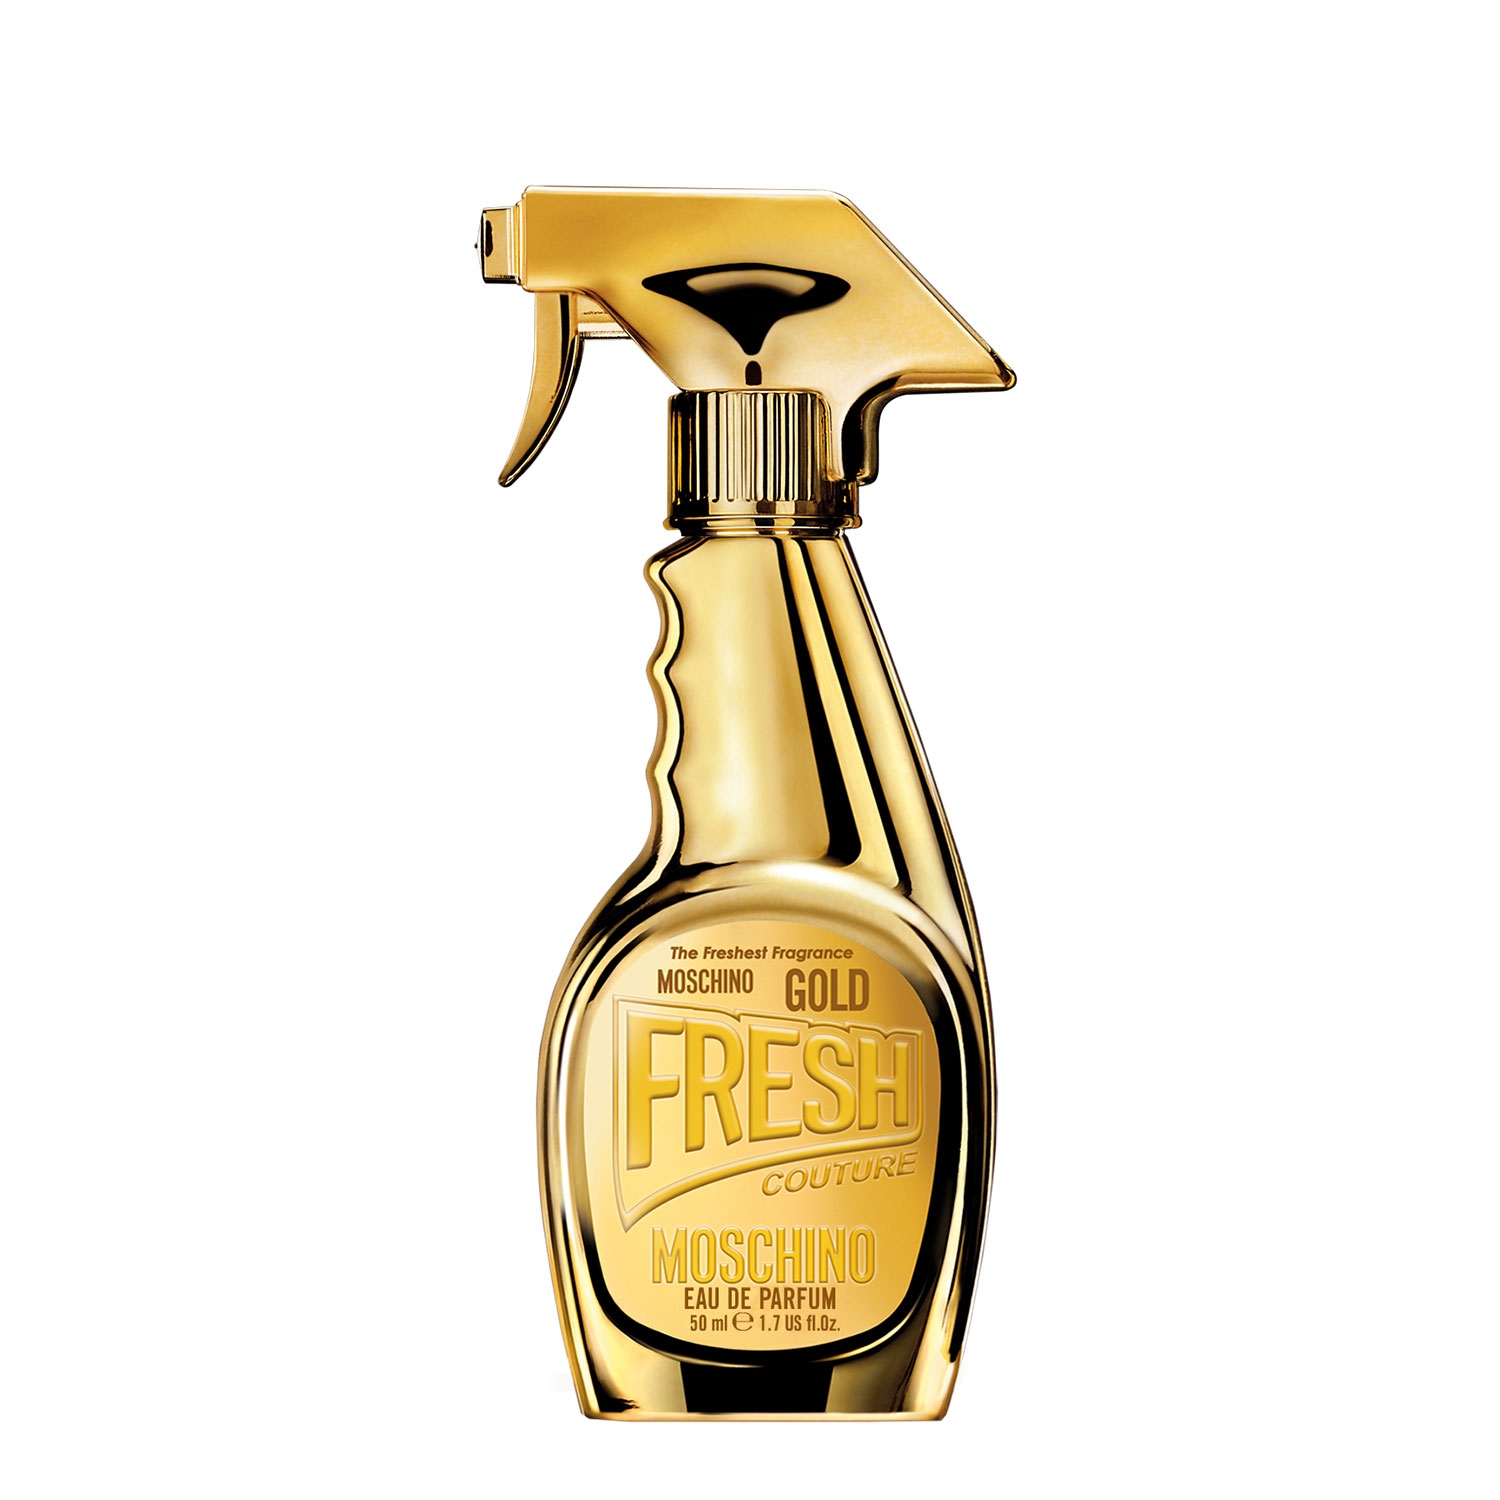 Produktbild von Gold Fresh Couture - Eau de Parfum